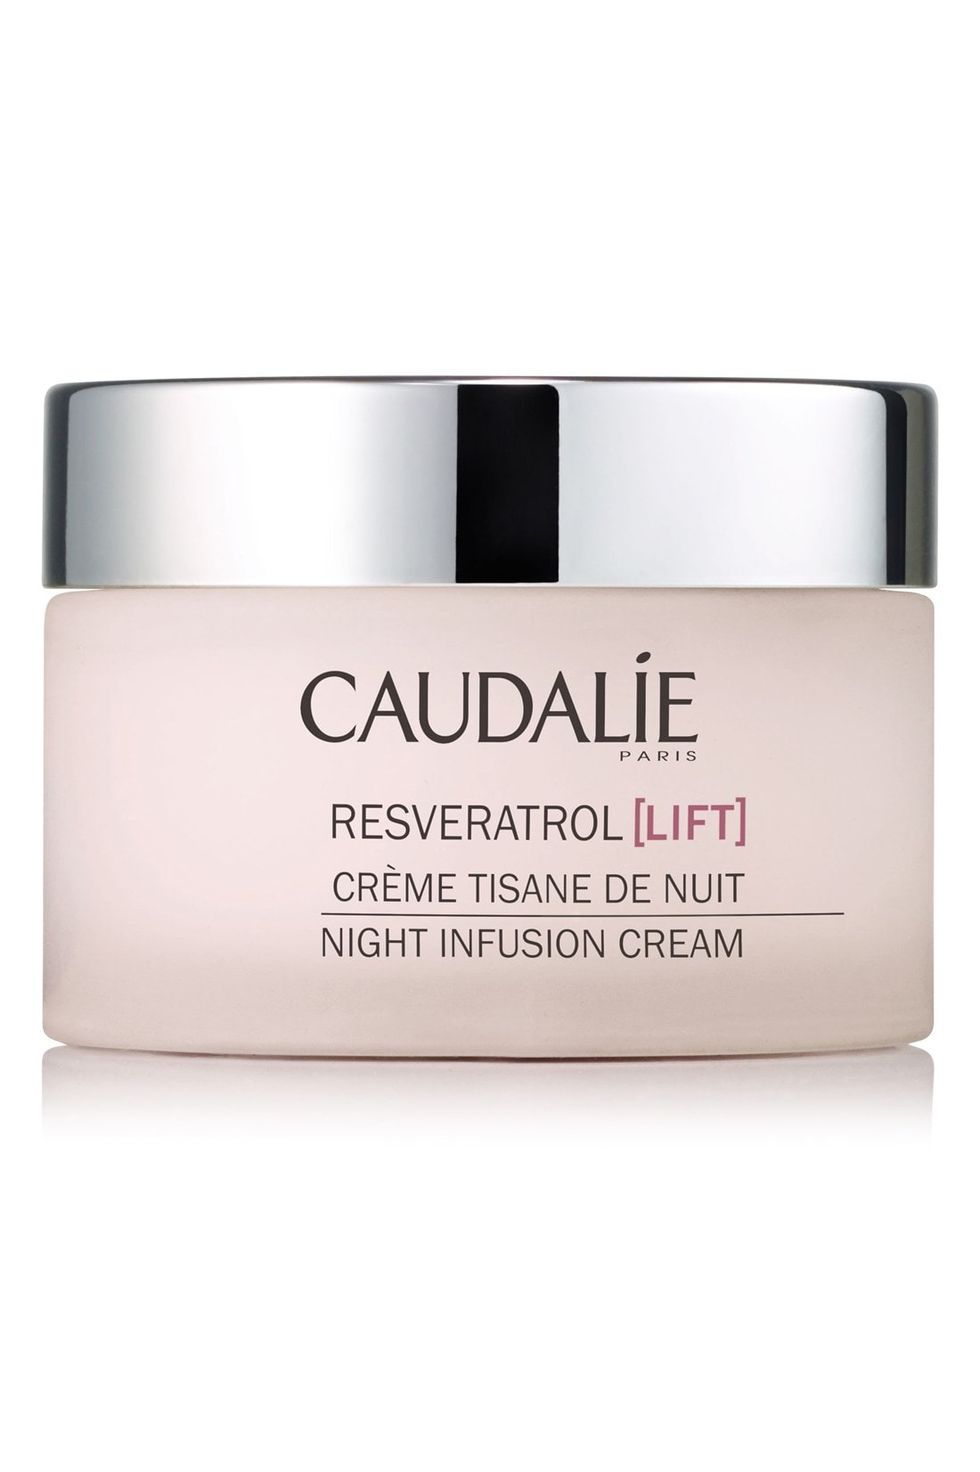 Caudalié Resveratrol Lift Night Infusion Cream